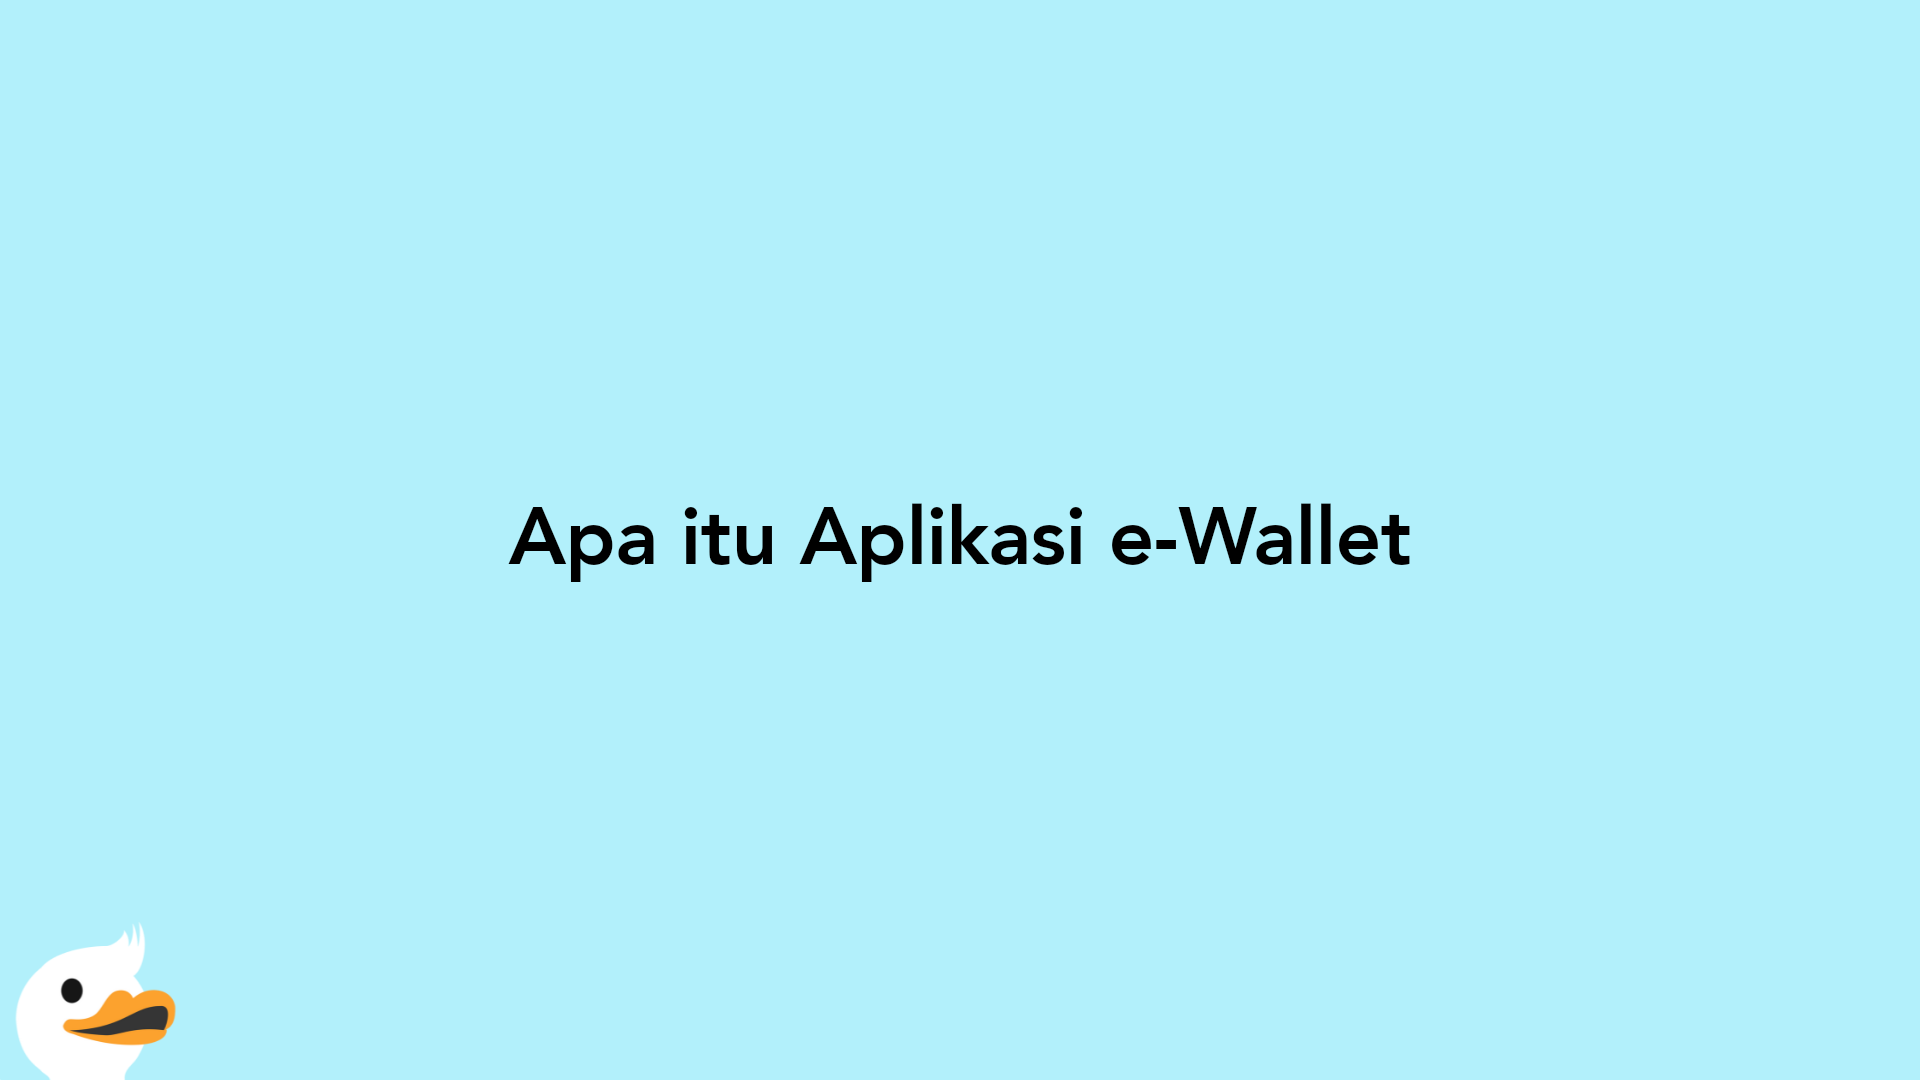 Apa itu Aplikasi e-Wallet